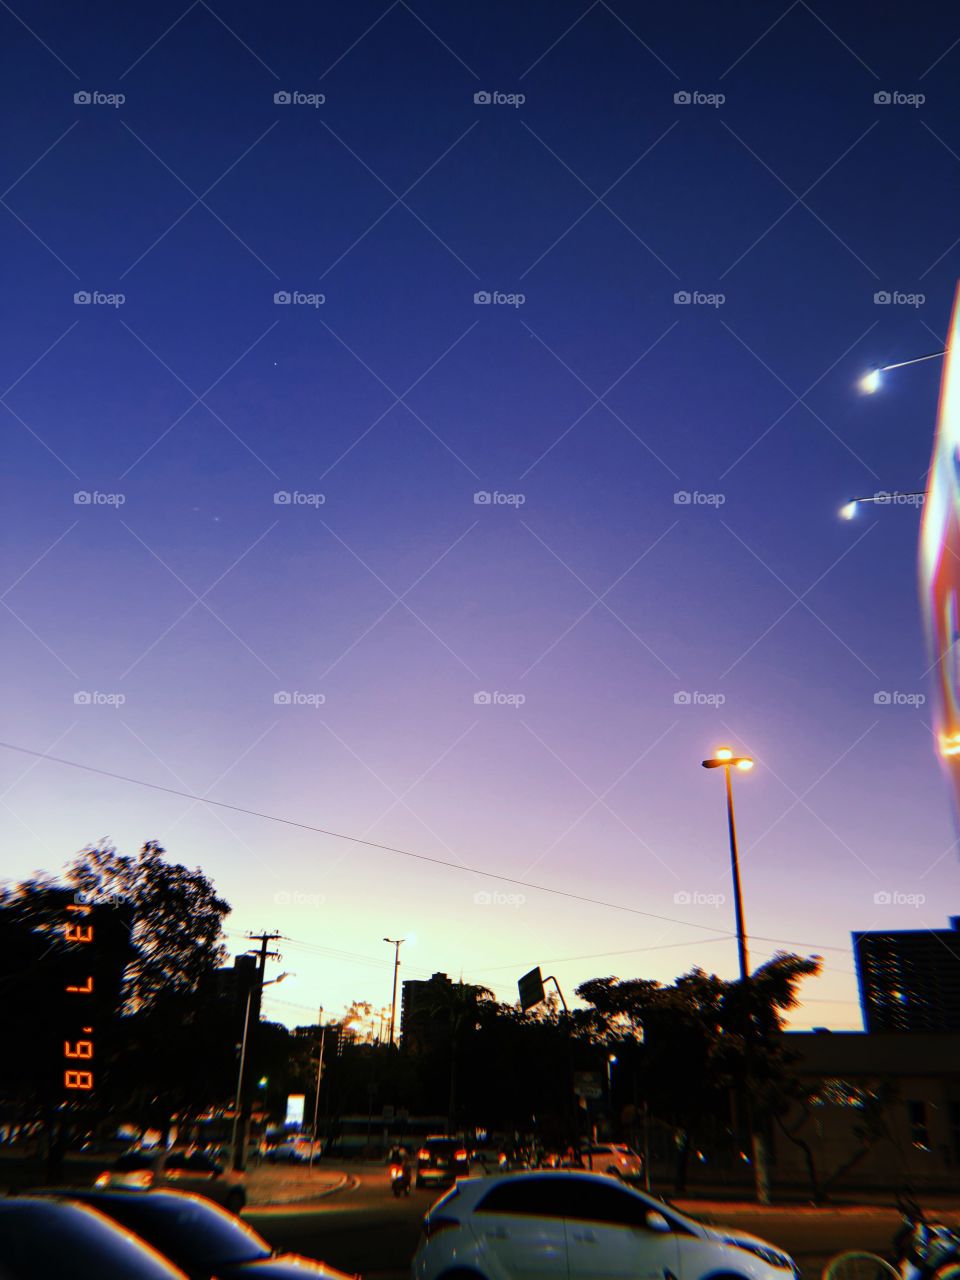 O lindo céu da cidade Campina Grande - PB